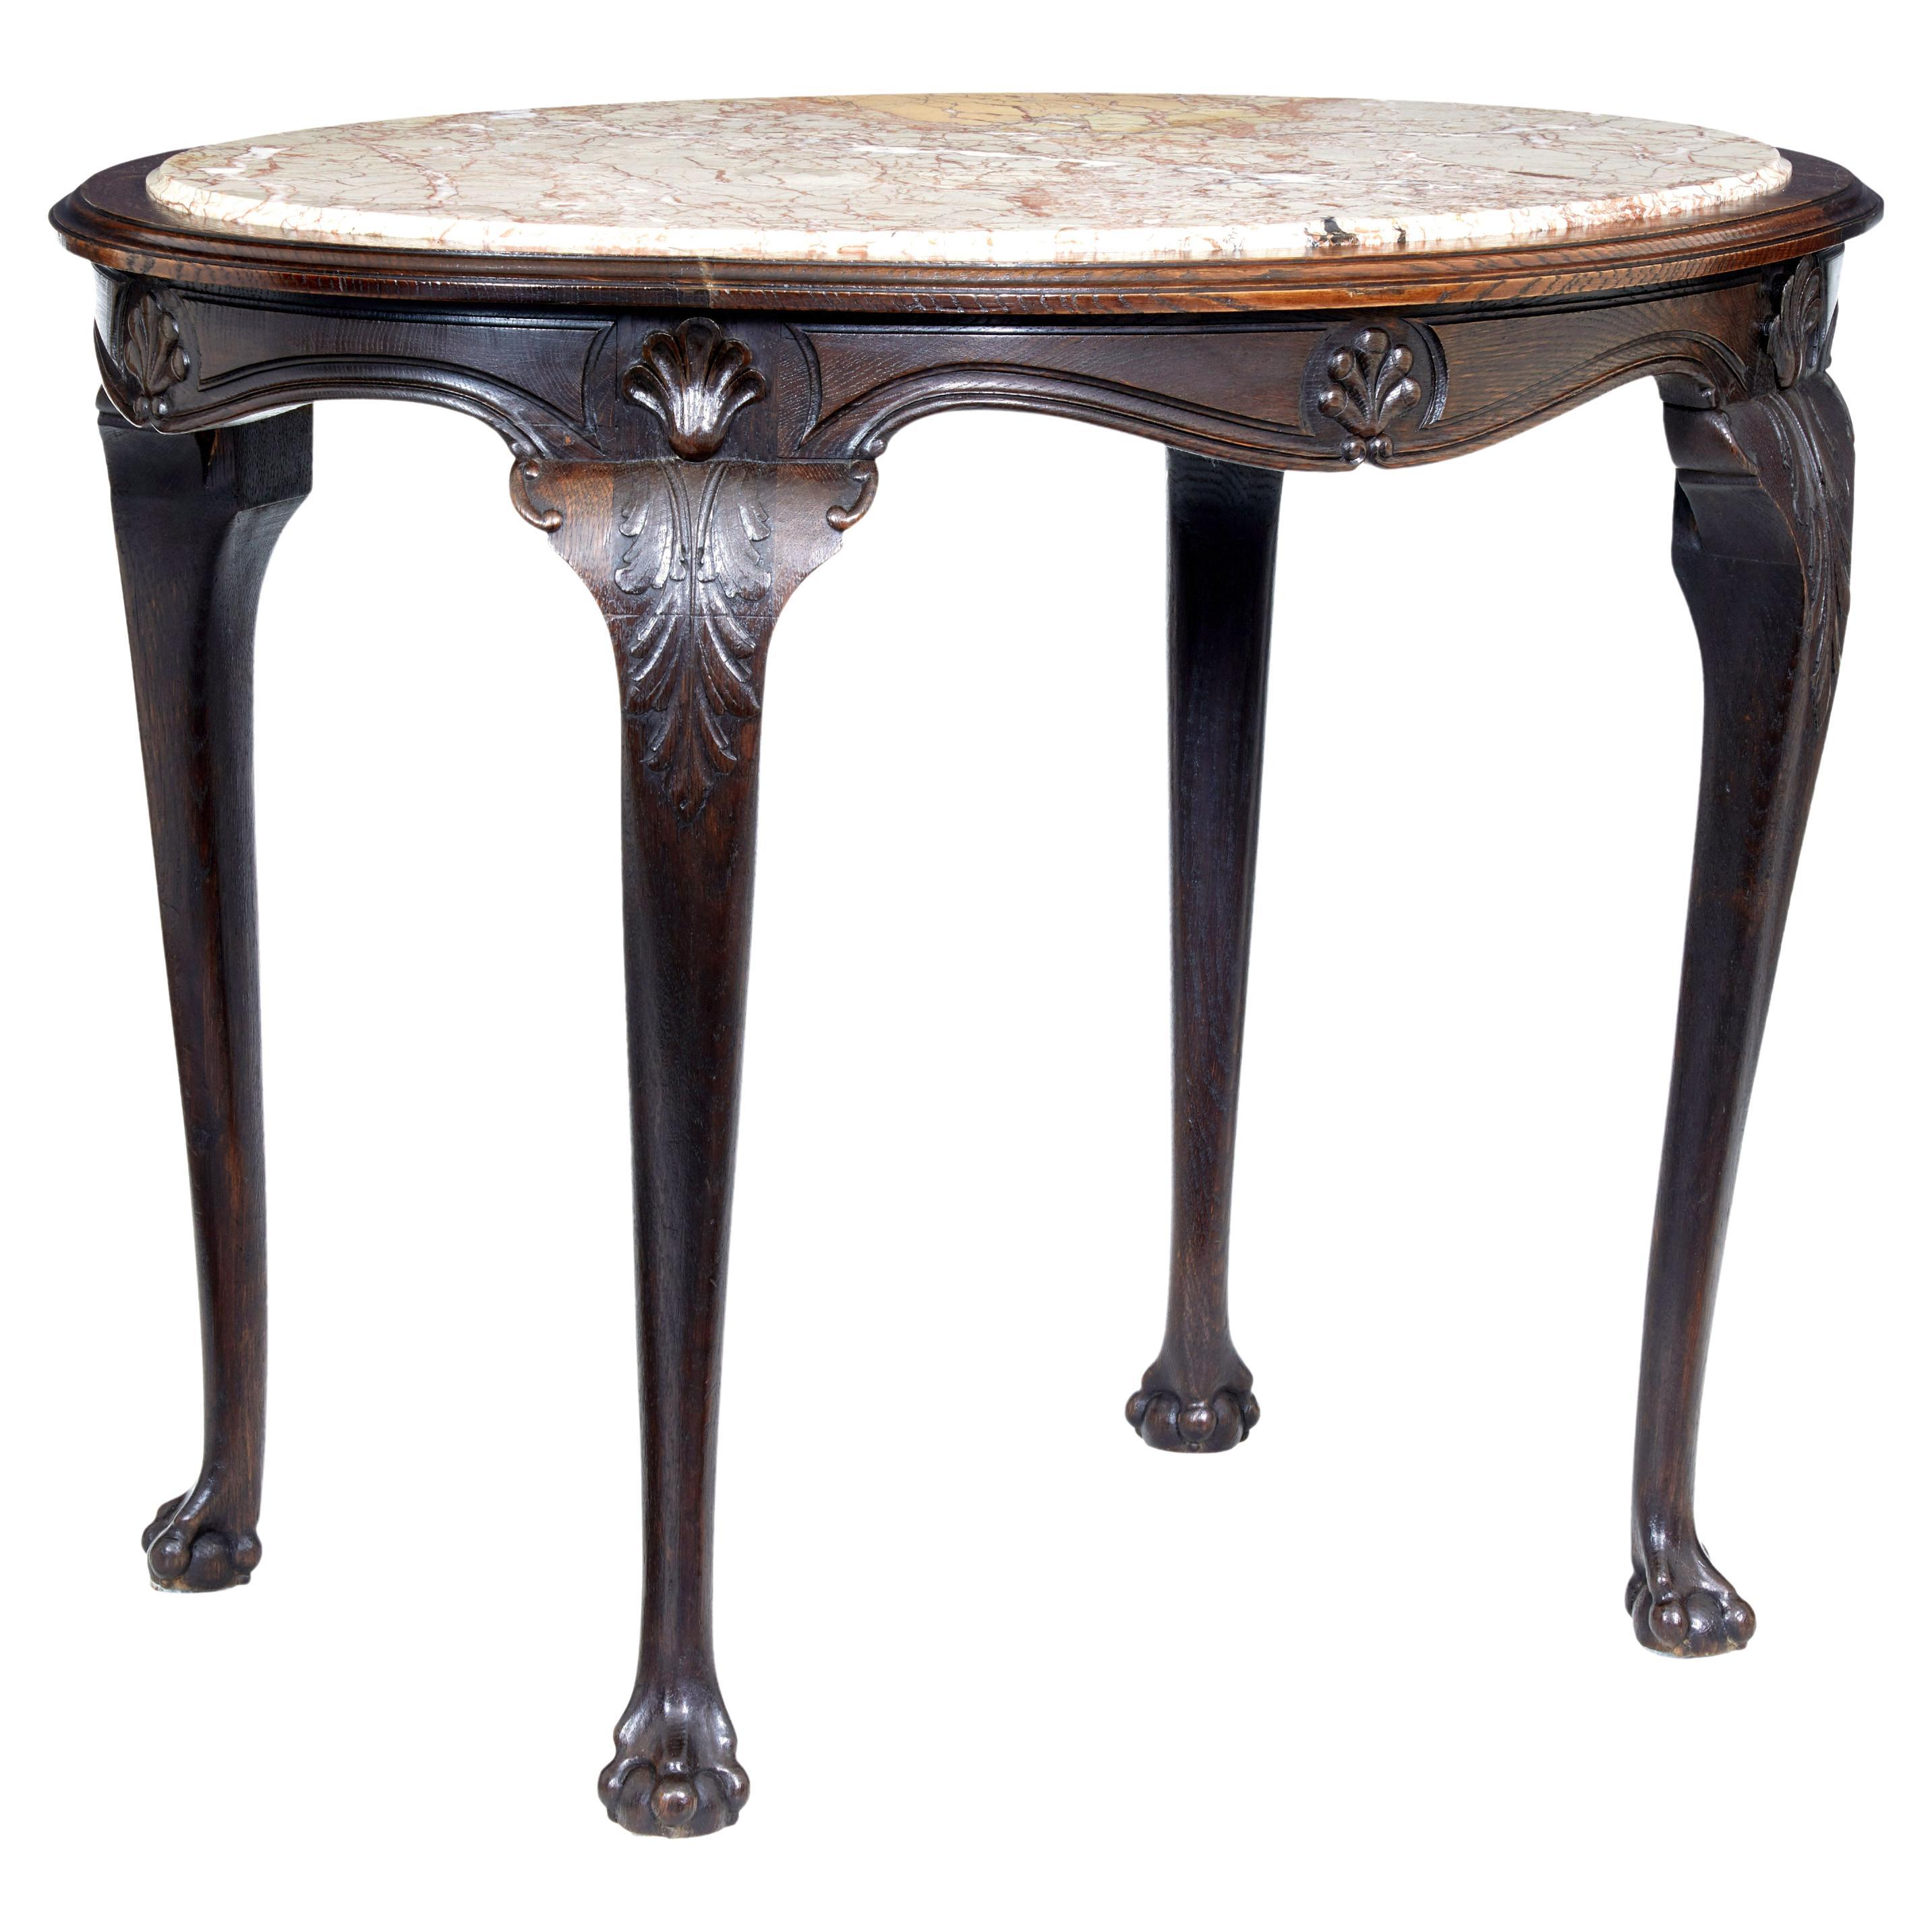 Table en chêne à plateau de marbre art nouveau français du 19e siècle